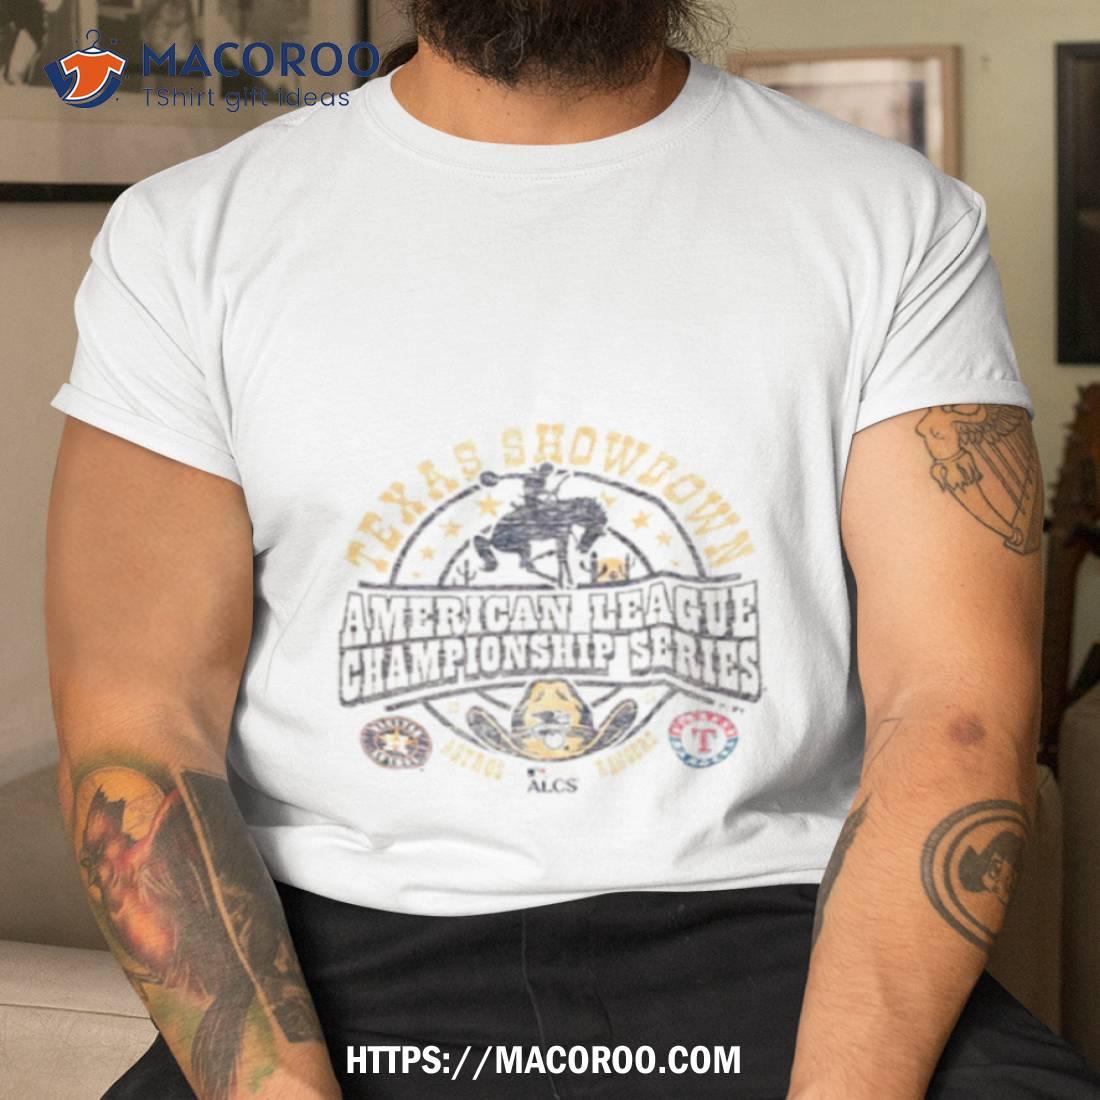 LGBTQ+ Houston Astros is love pride logo 2023 T-shirt, hoodie